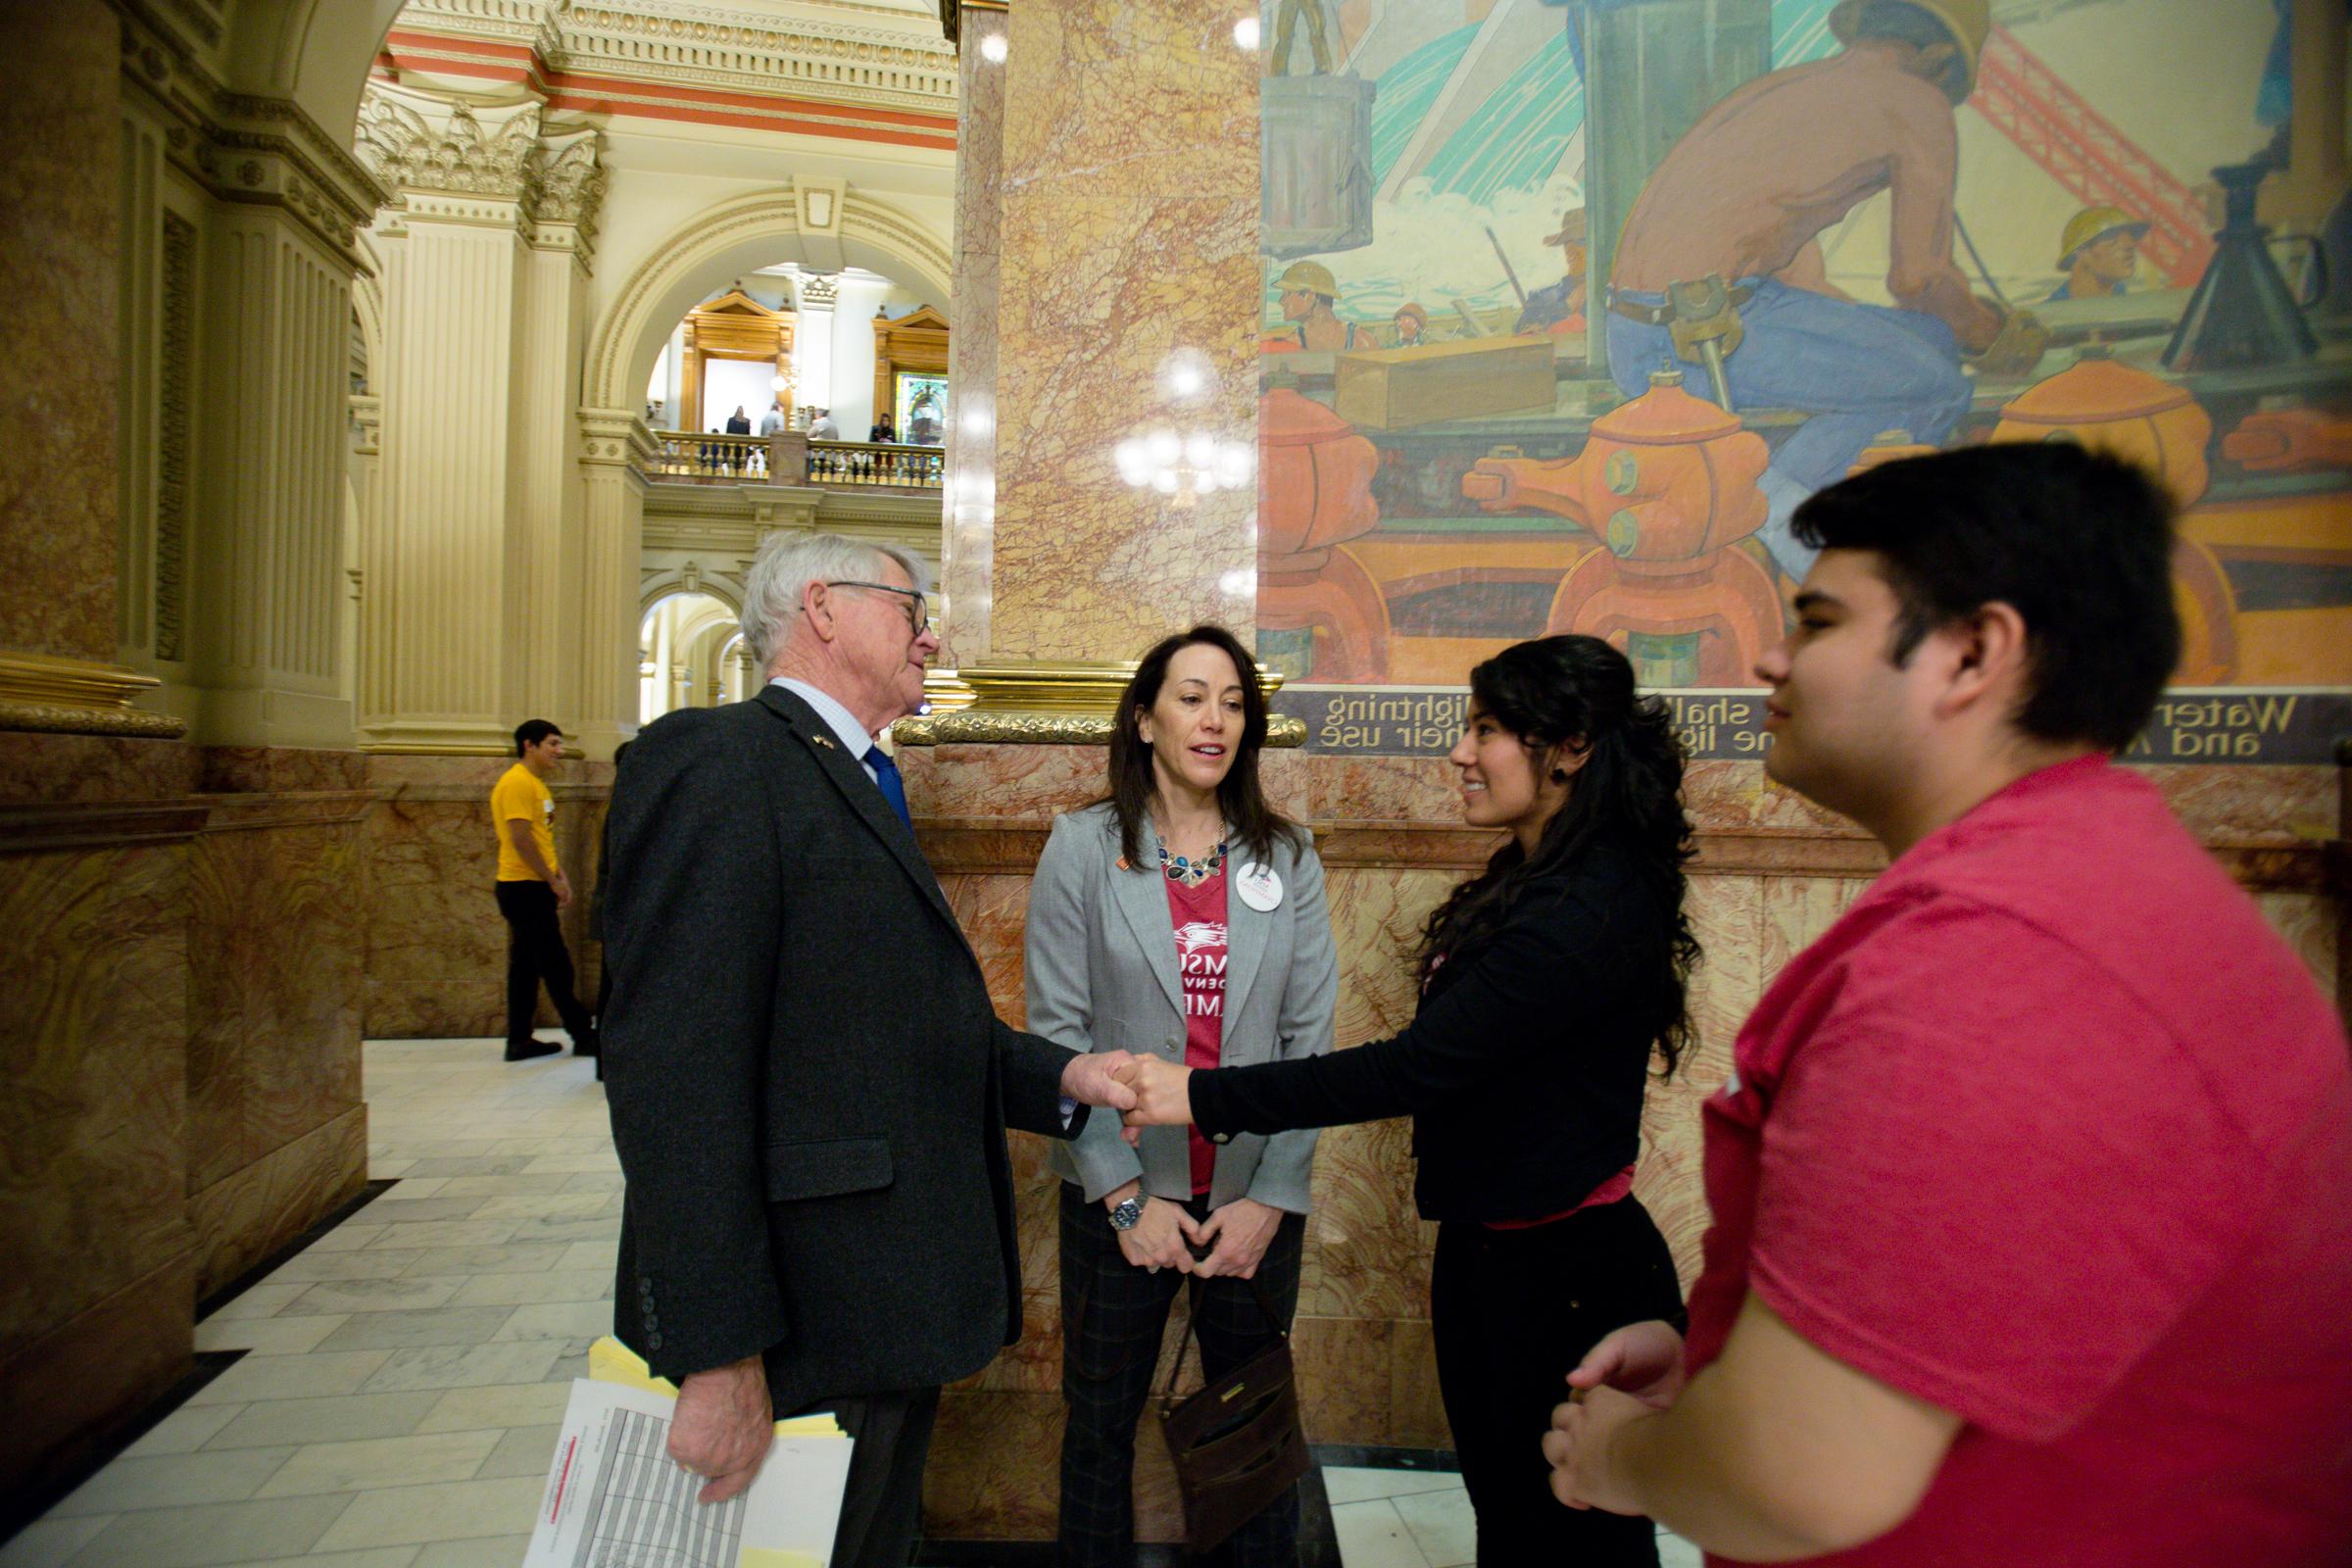 一名女学生在州议会大厦内与一名政客握手.